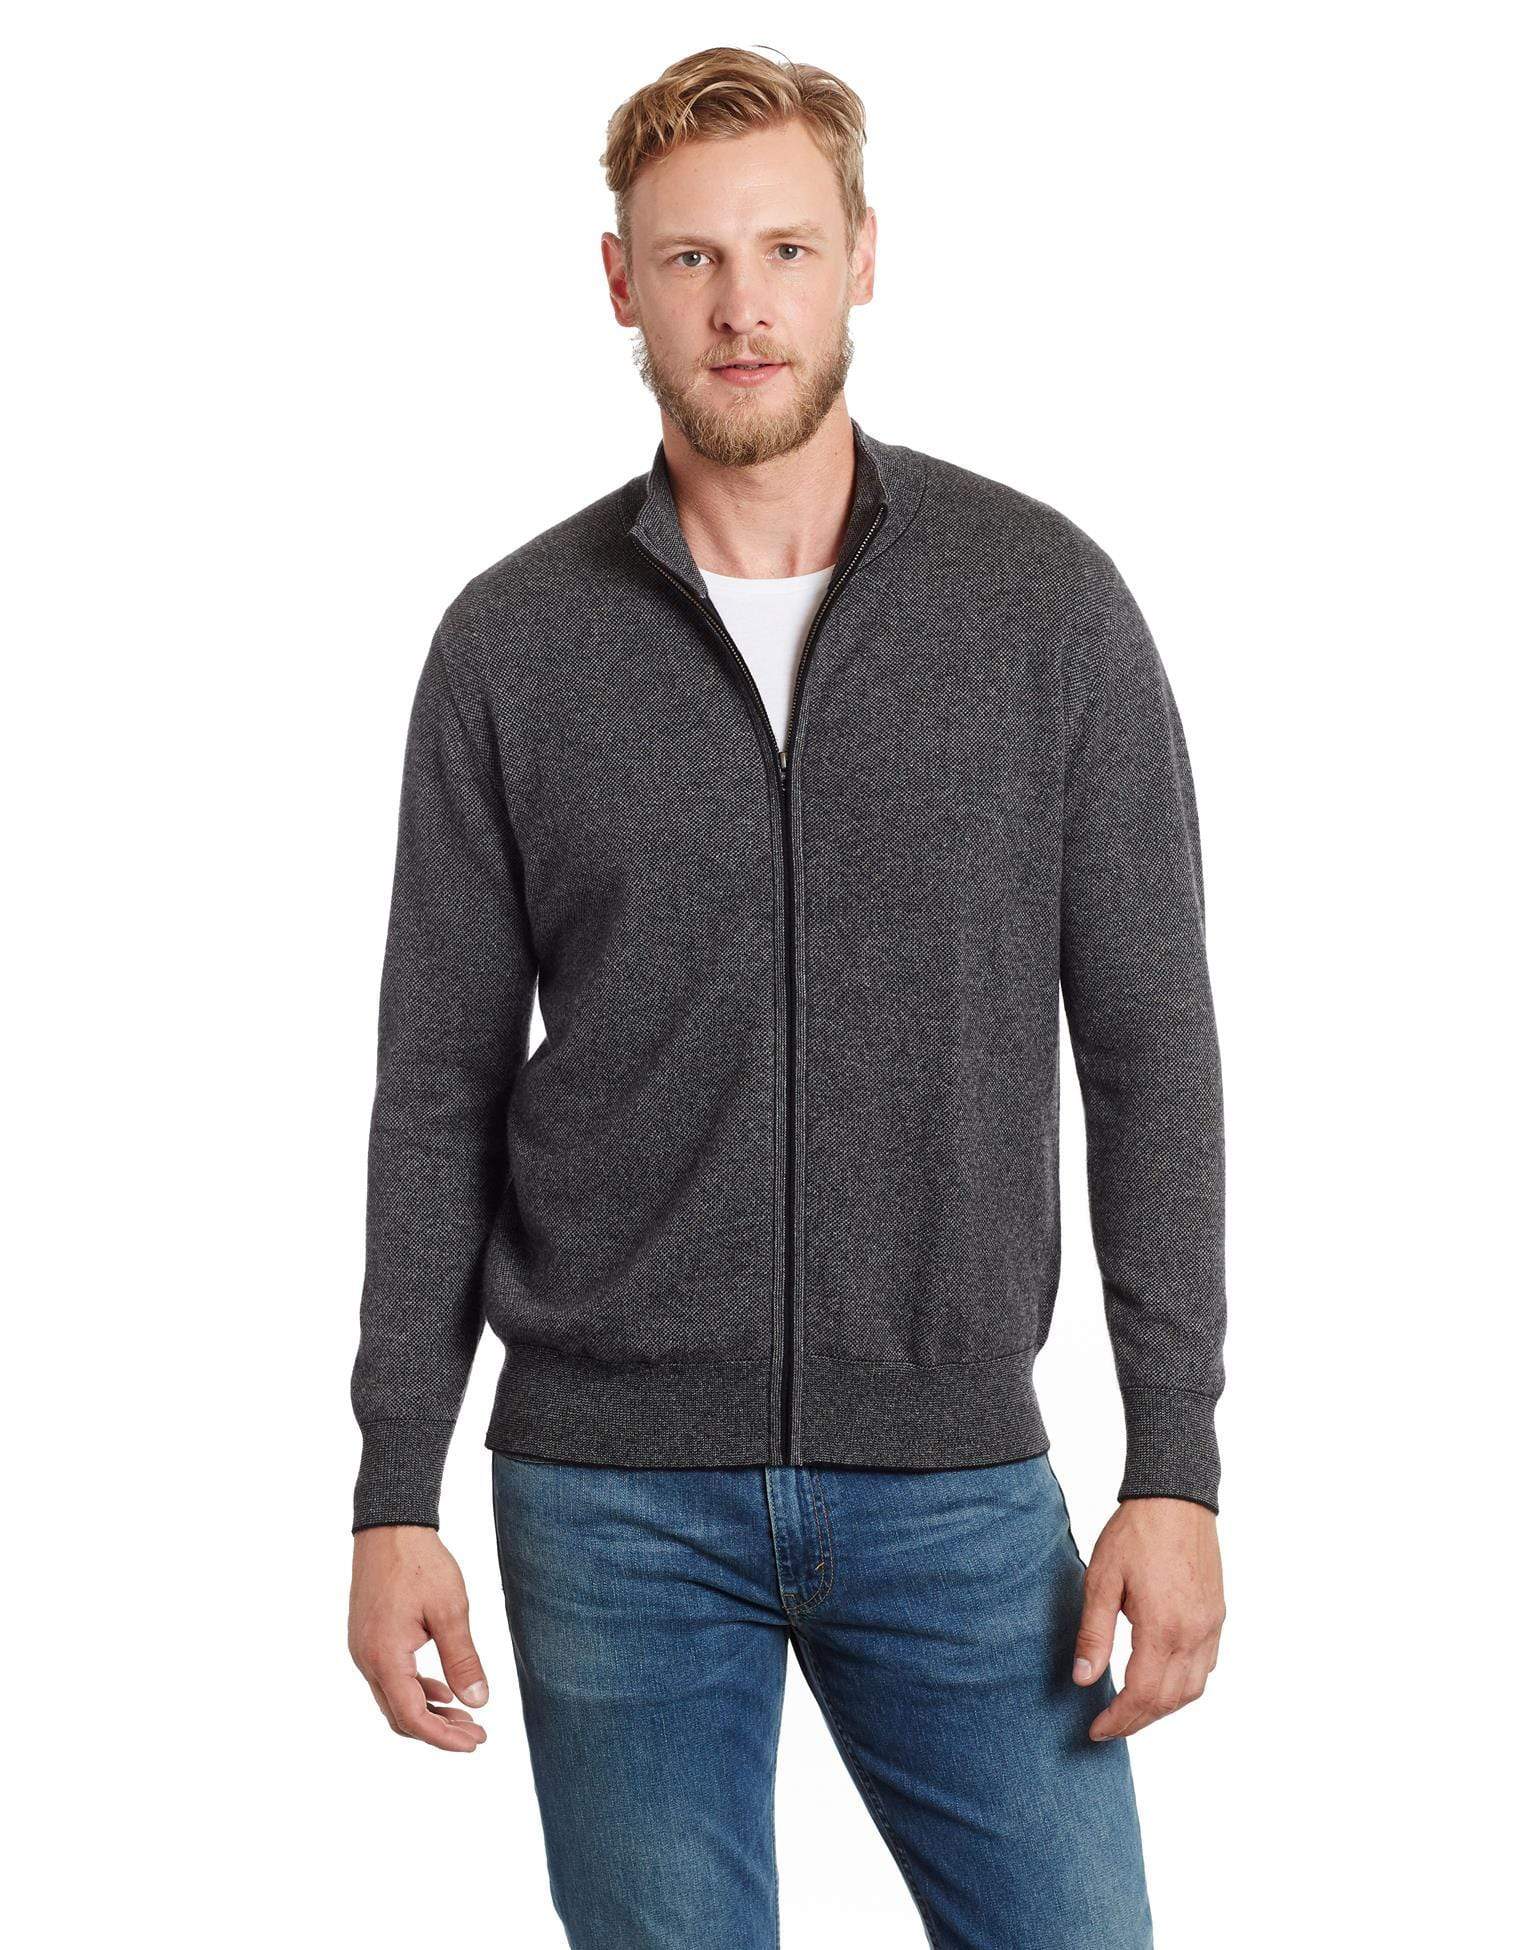 Alta Men's Casual Fleece Lined Full-Zip Sweater Jacket - Walmart.com